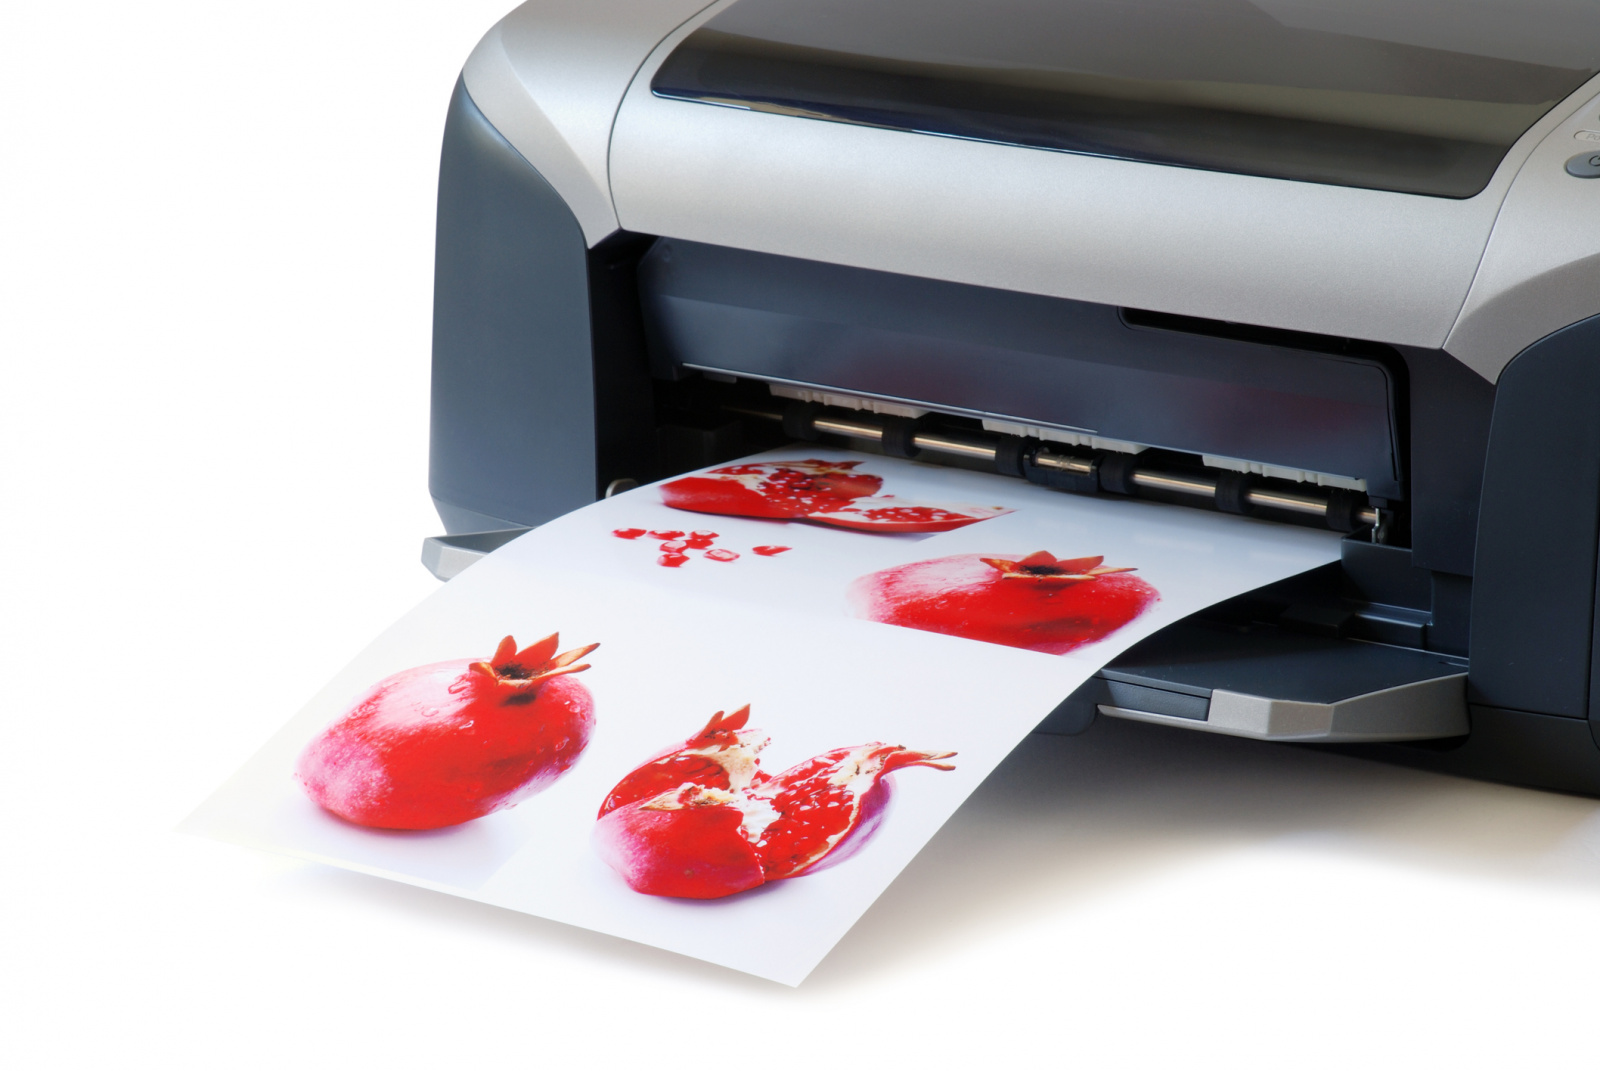 Ma már számos típusú nyomtató létezik.